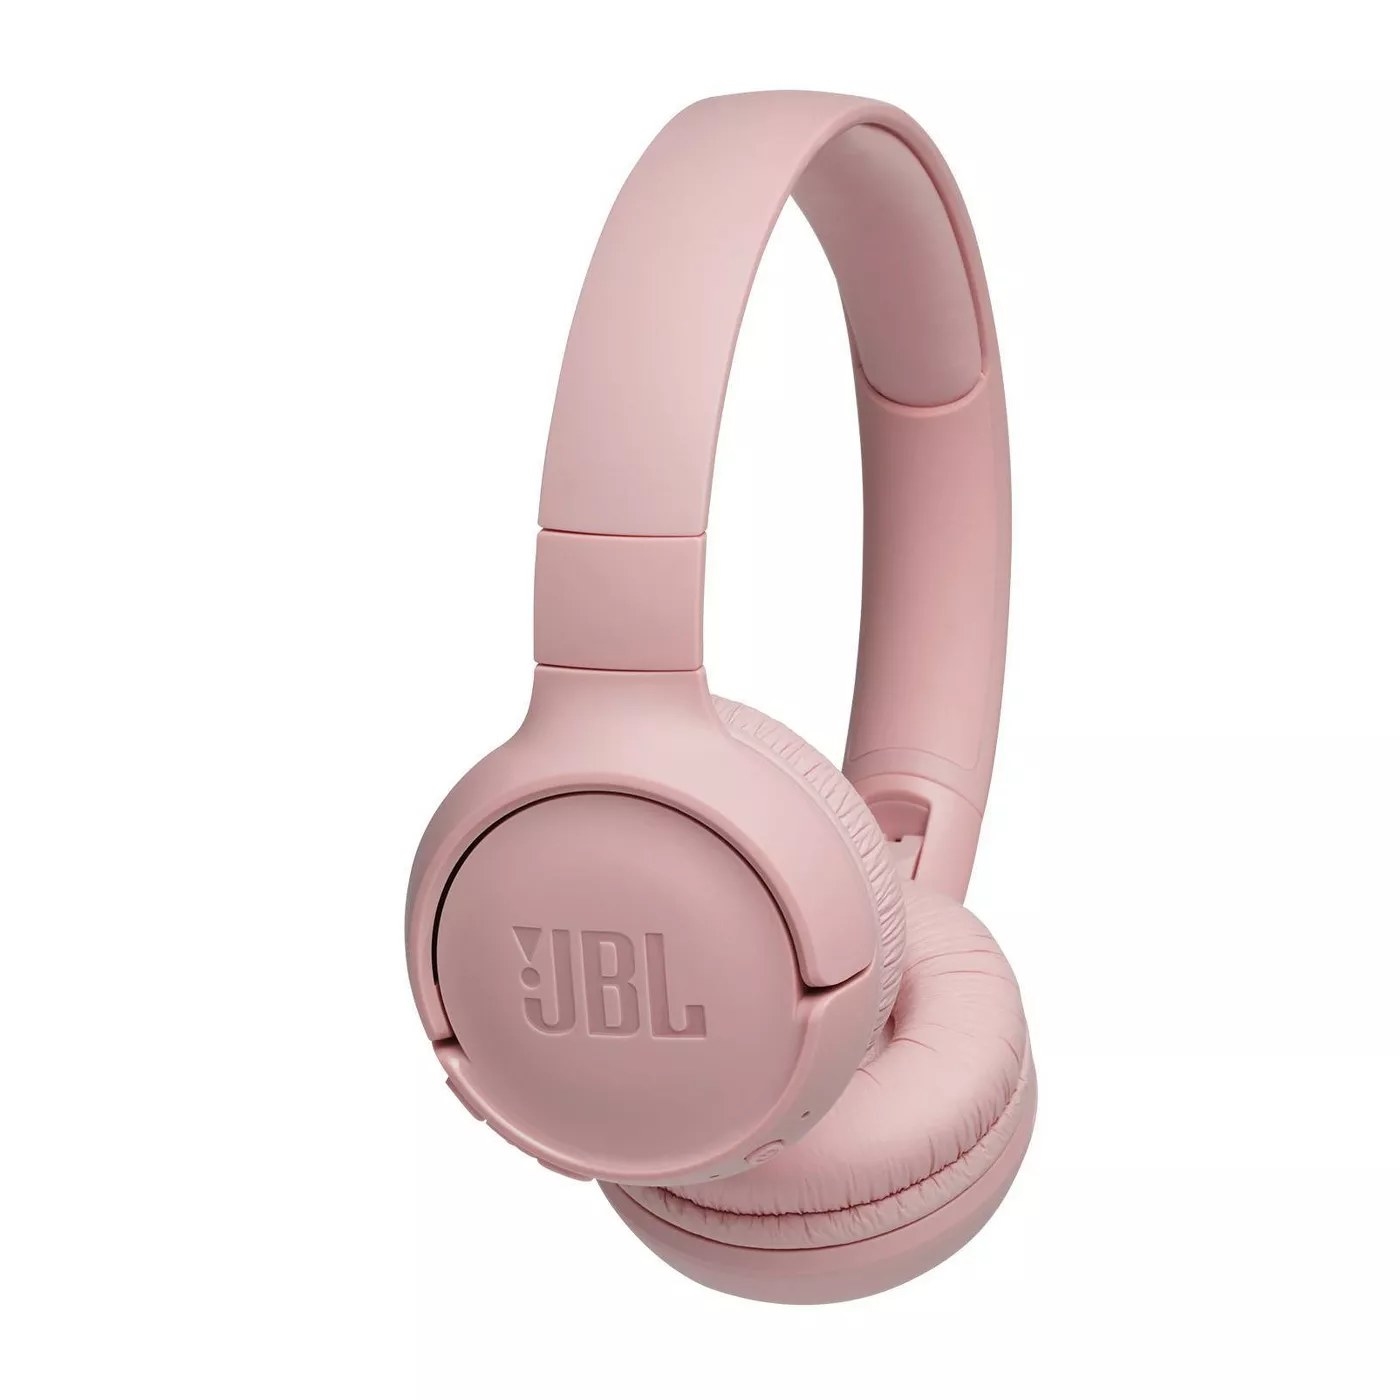 The on-ear JBL headphones in pink